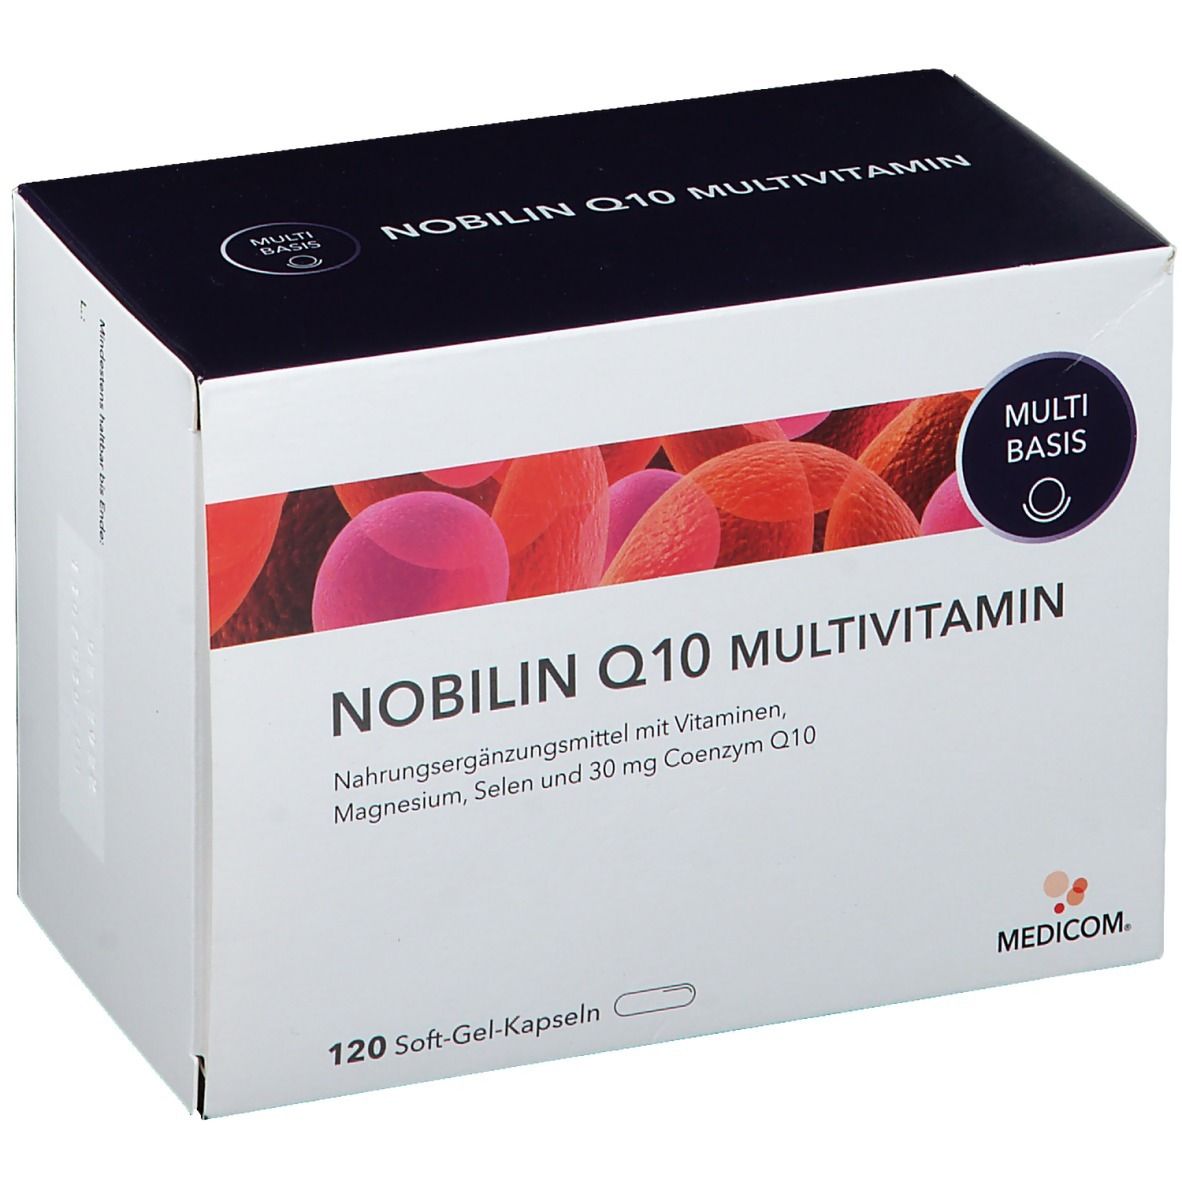 Image of Nobilin Q10 Multivitamin